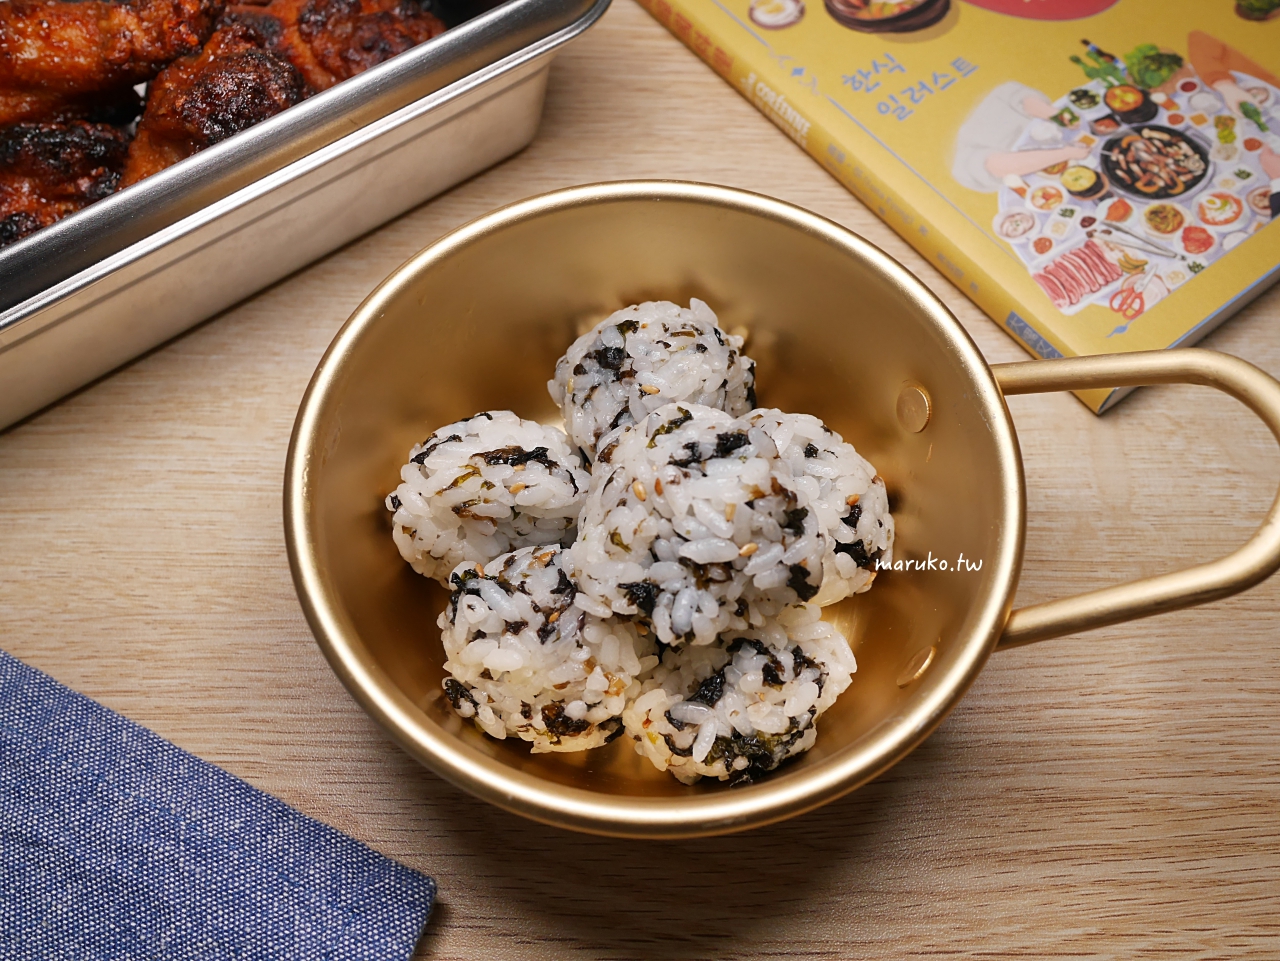 【食譜】韓式手作飯糰 芝麻炒海苔酥用法 簡單白飯拌飯做法 @Maruko與美食有個約會